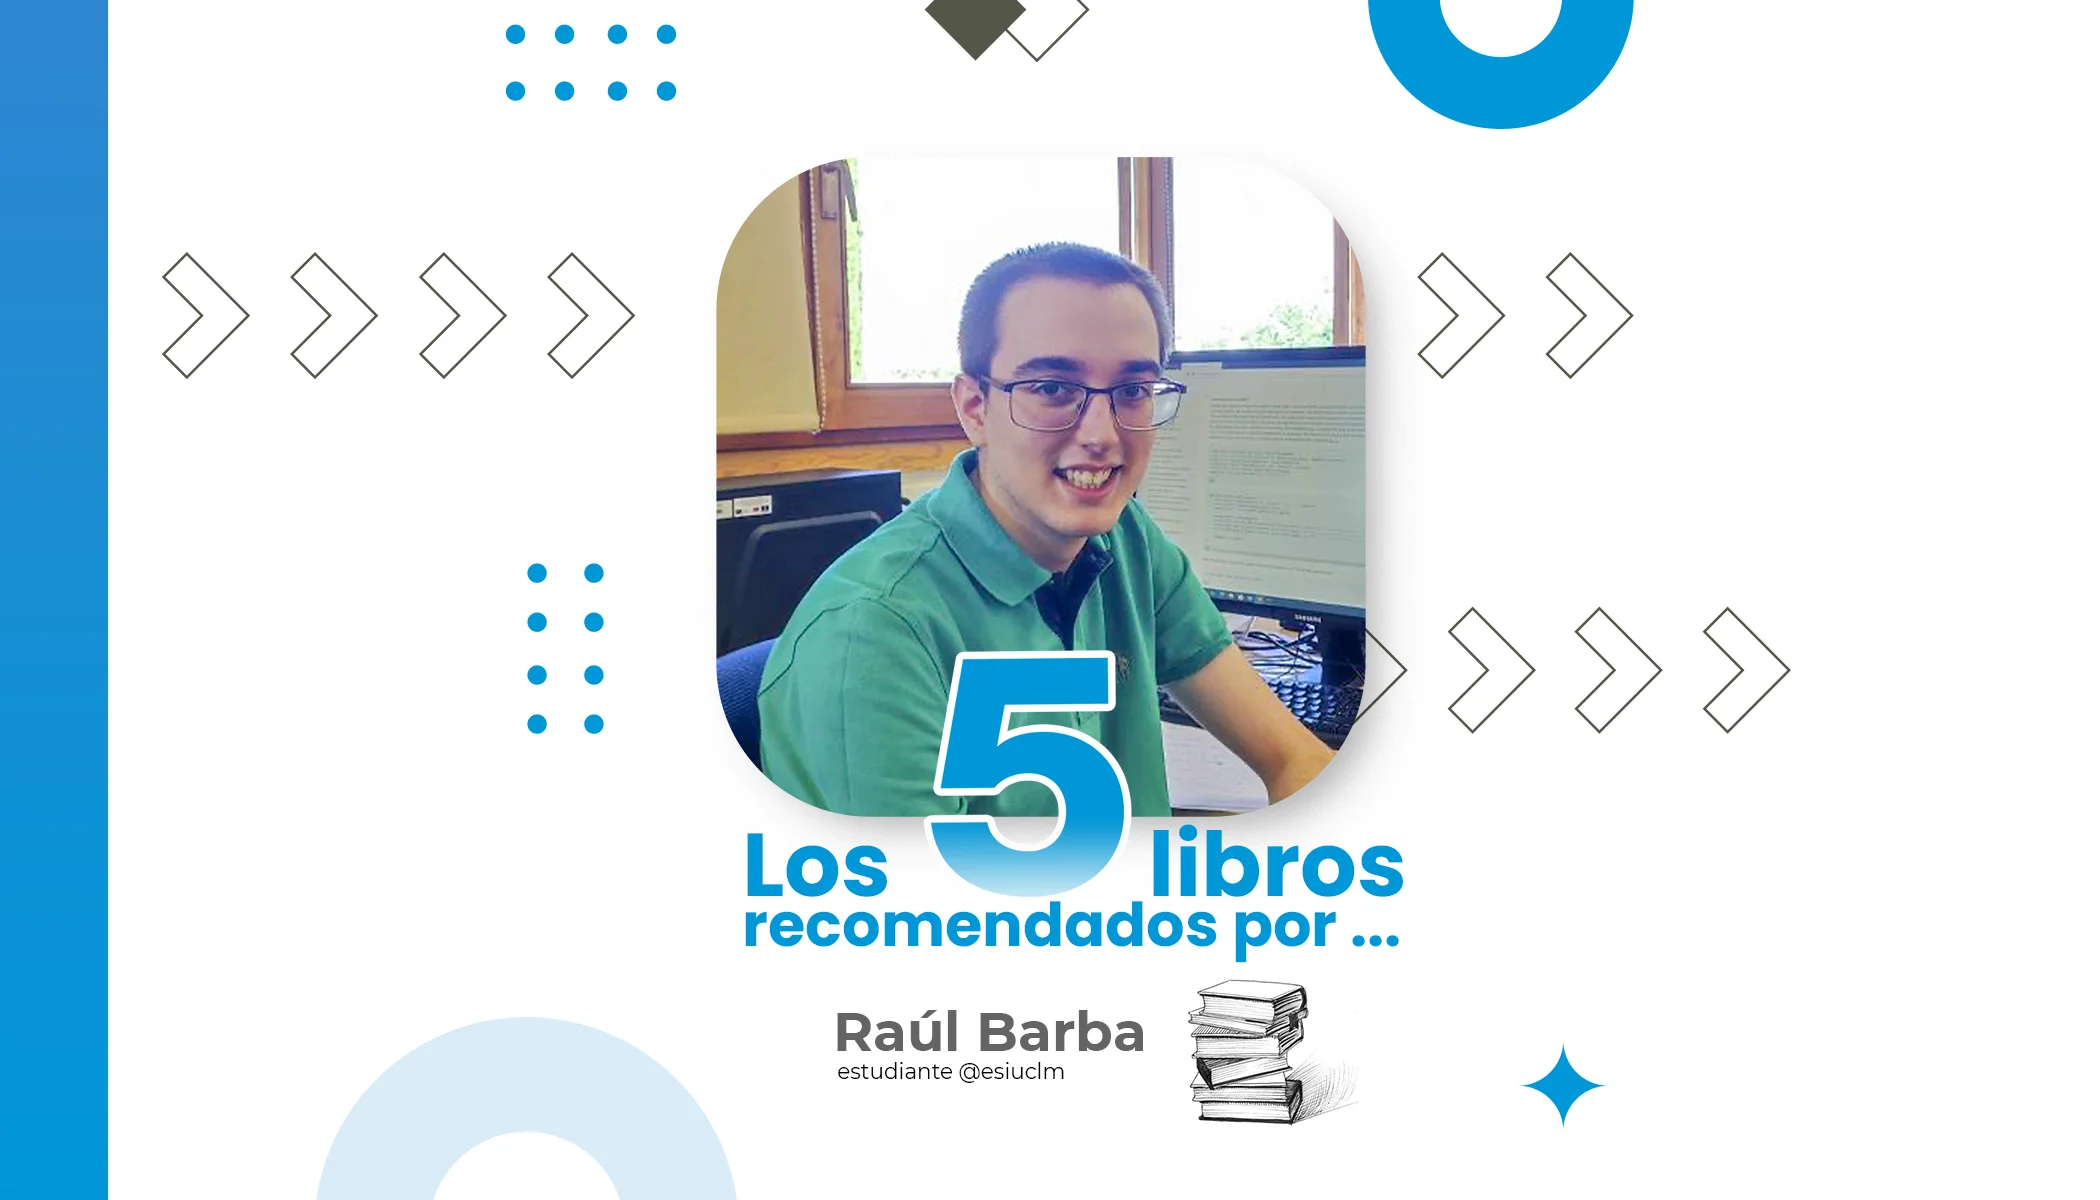 Raúl Barba Student der Hochschule für Informatik